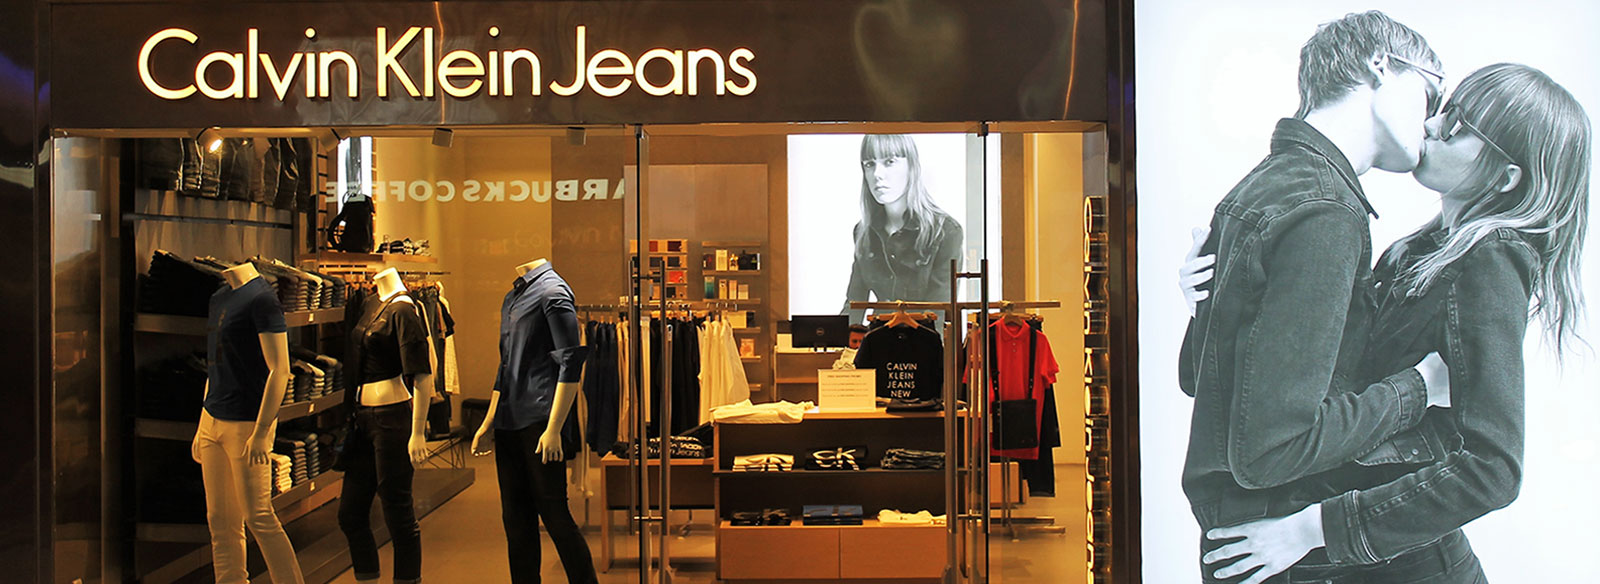 Zalando Teams With Calvin Klein Underwear for Joan Smalls TV Campaign